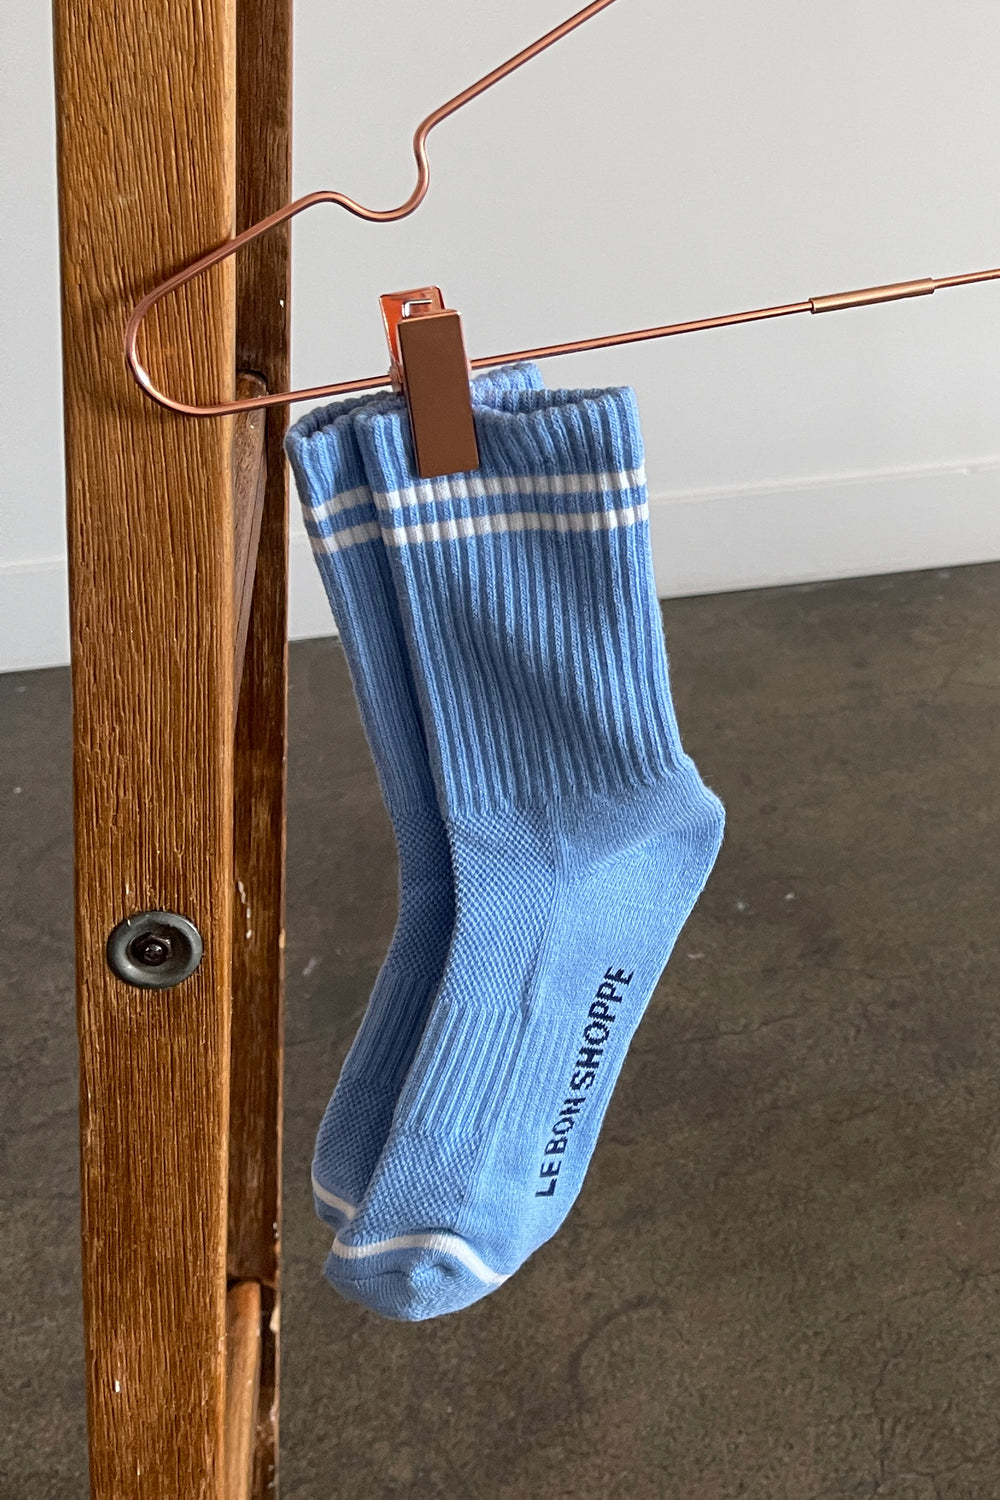 Boyfriend-Socken – Französisches Blau